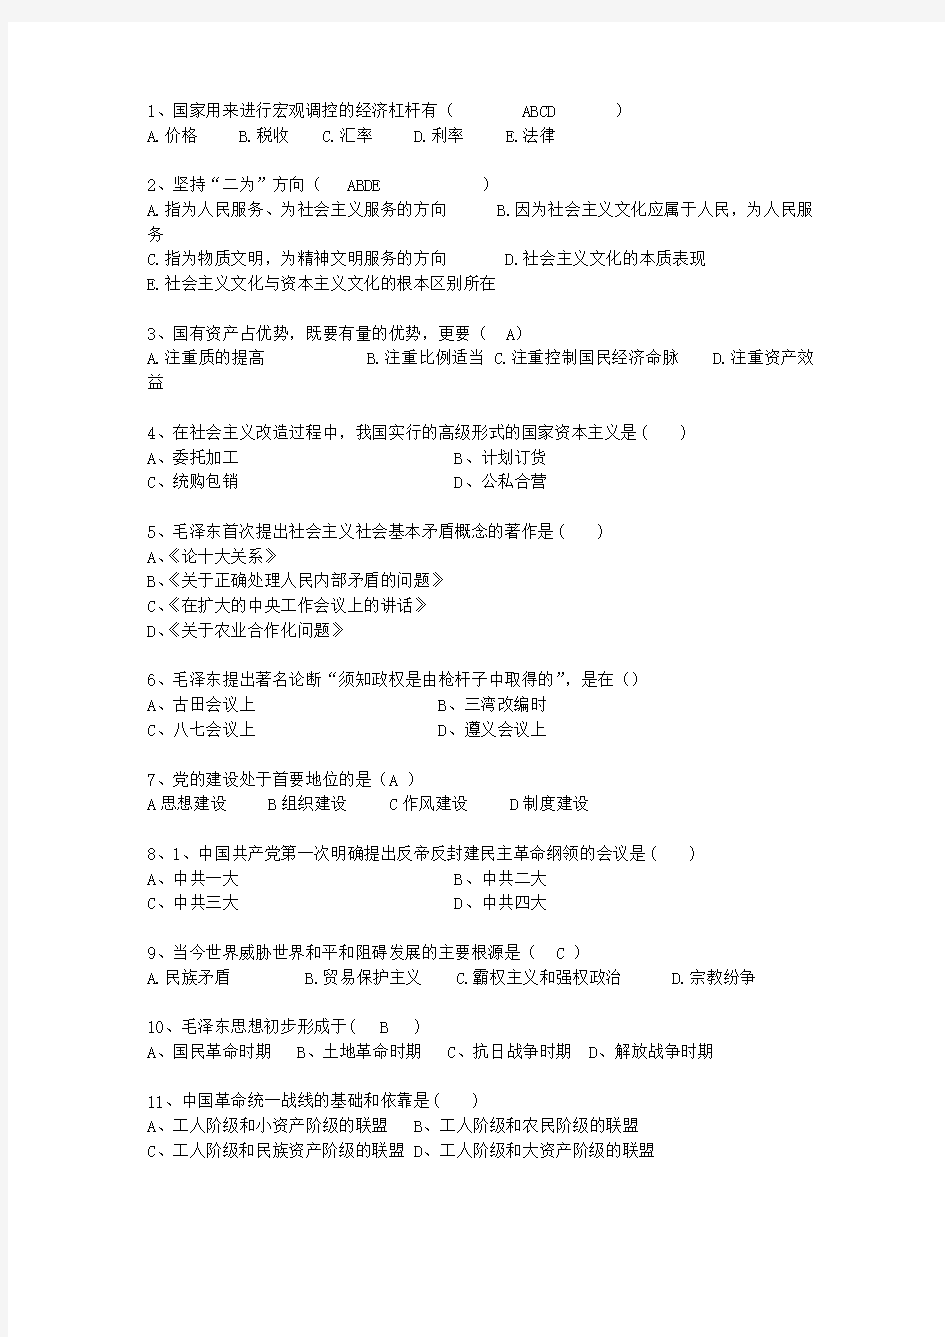 2013云南省毛概复习提纲答案整理版考试技巧、答题原则